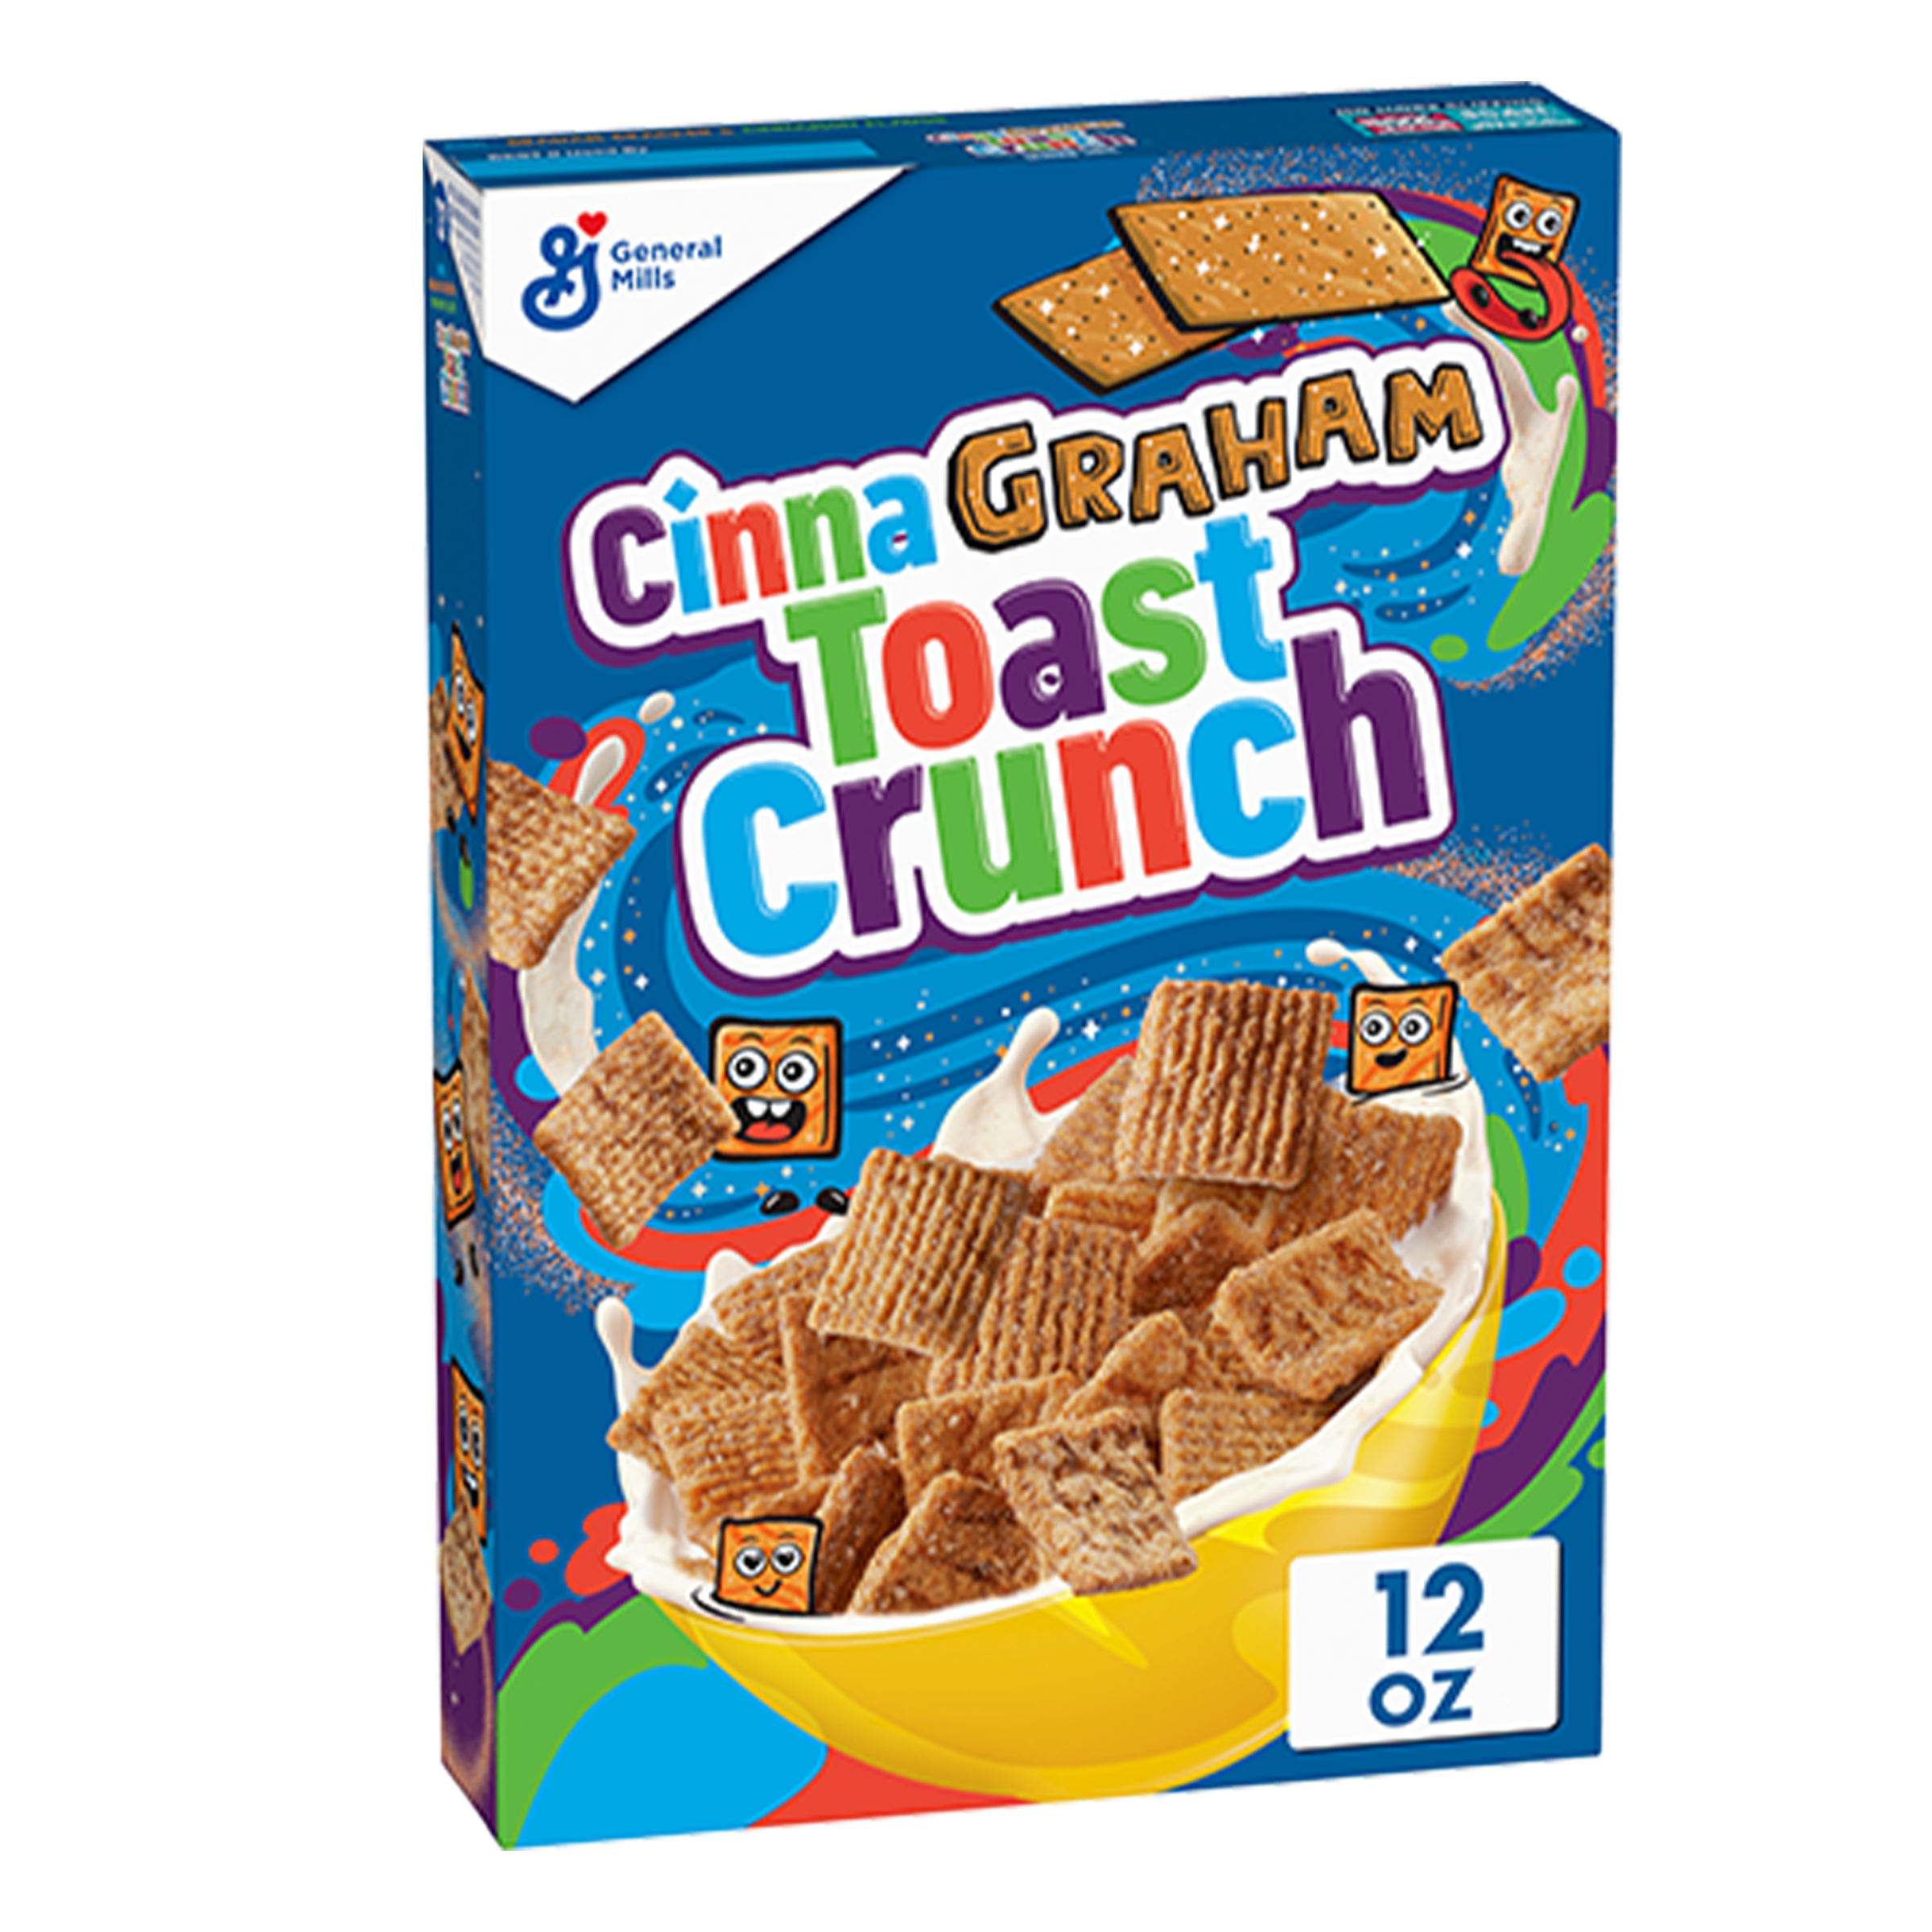 CinnaGraham Toast Crunch